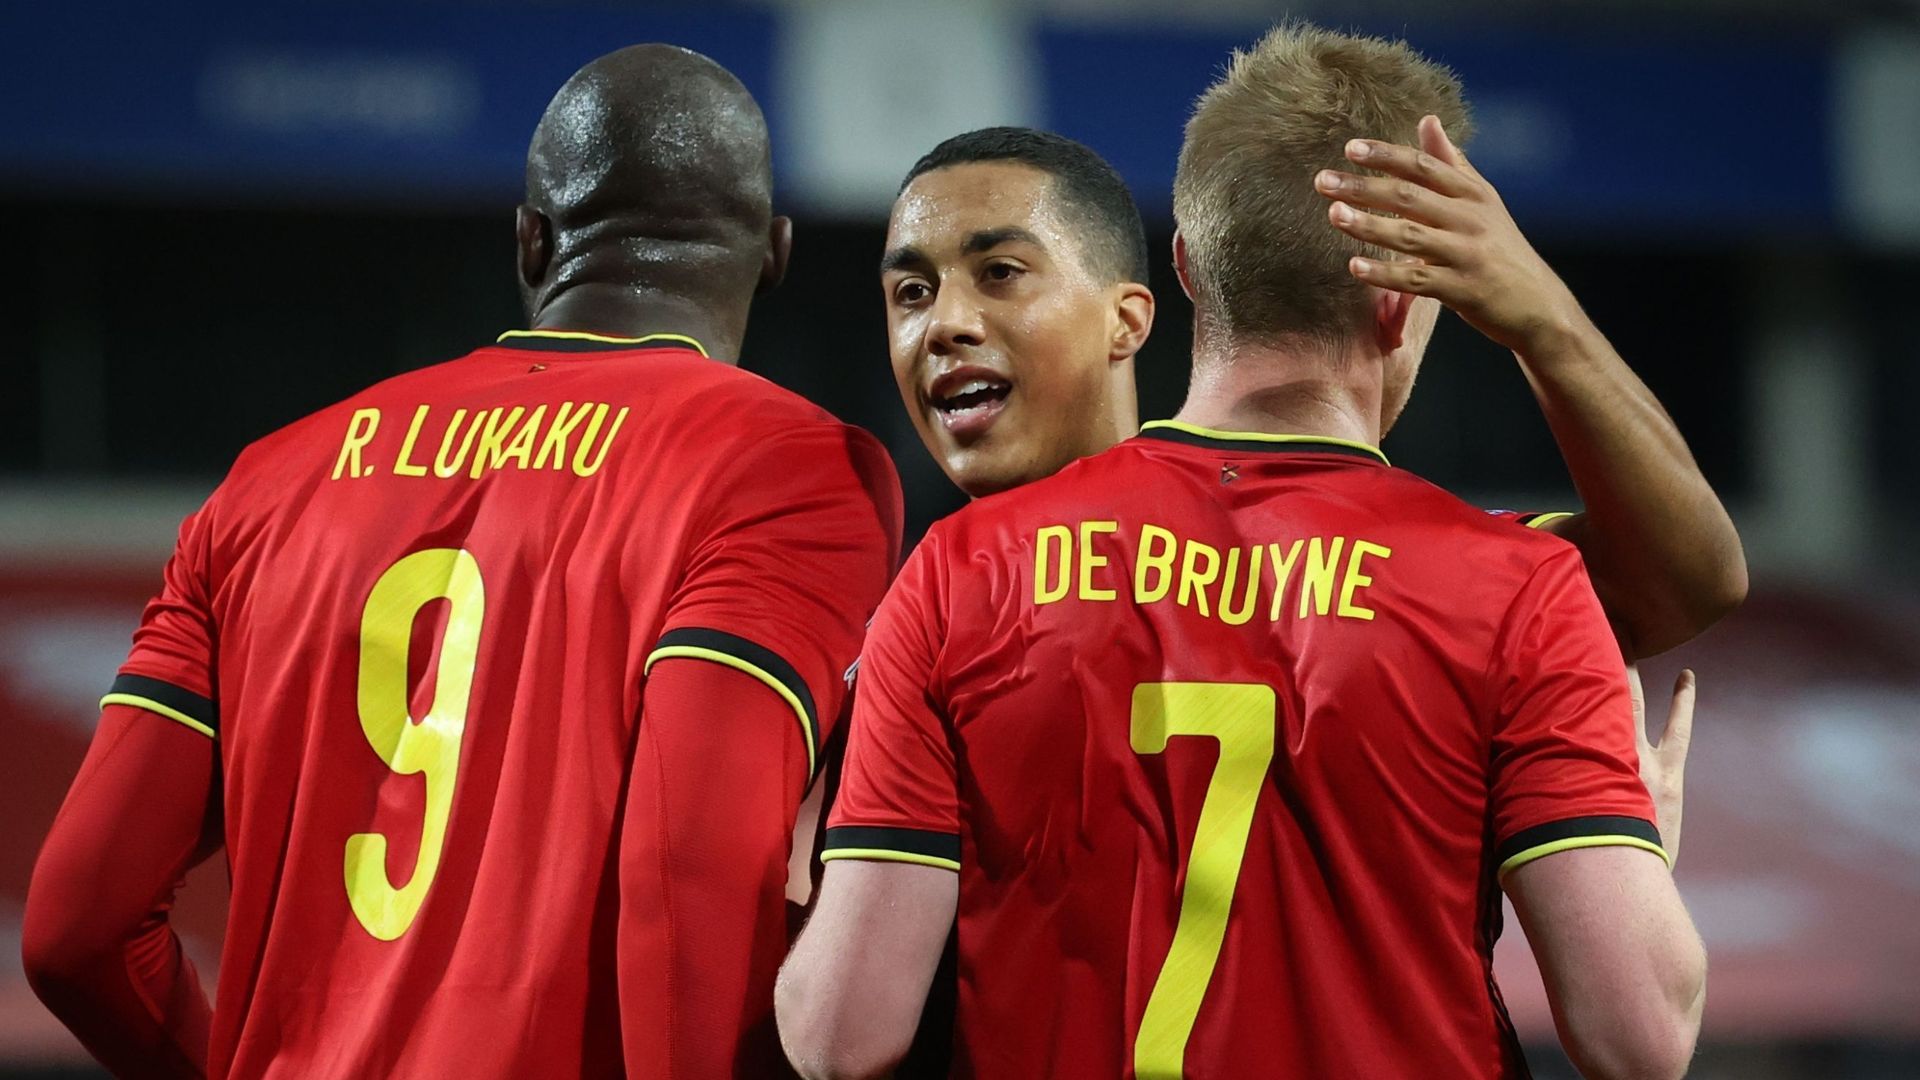 La Belgique va terminer l'année en tant que première nation mondiale jeudi lors de la publication du dernier classement FIFA de l'année. Depuis la dernière mise à jour du classement il y a deux semaines, les Diables Rouges n'ont pas joué à l'instar des au